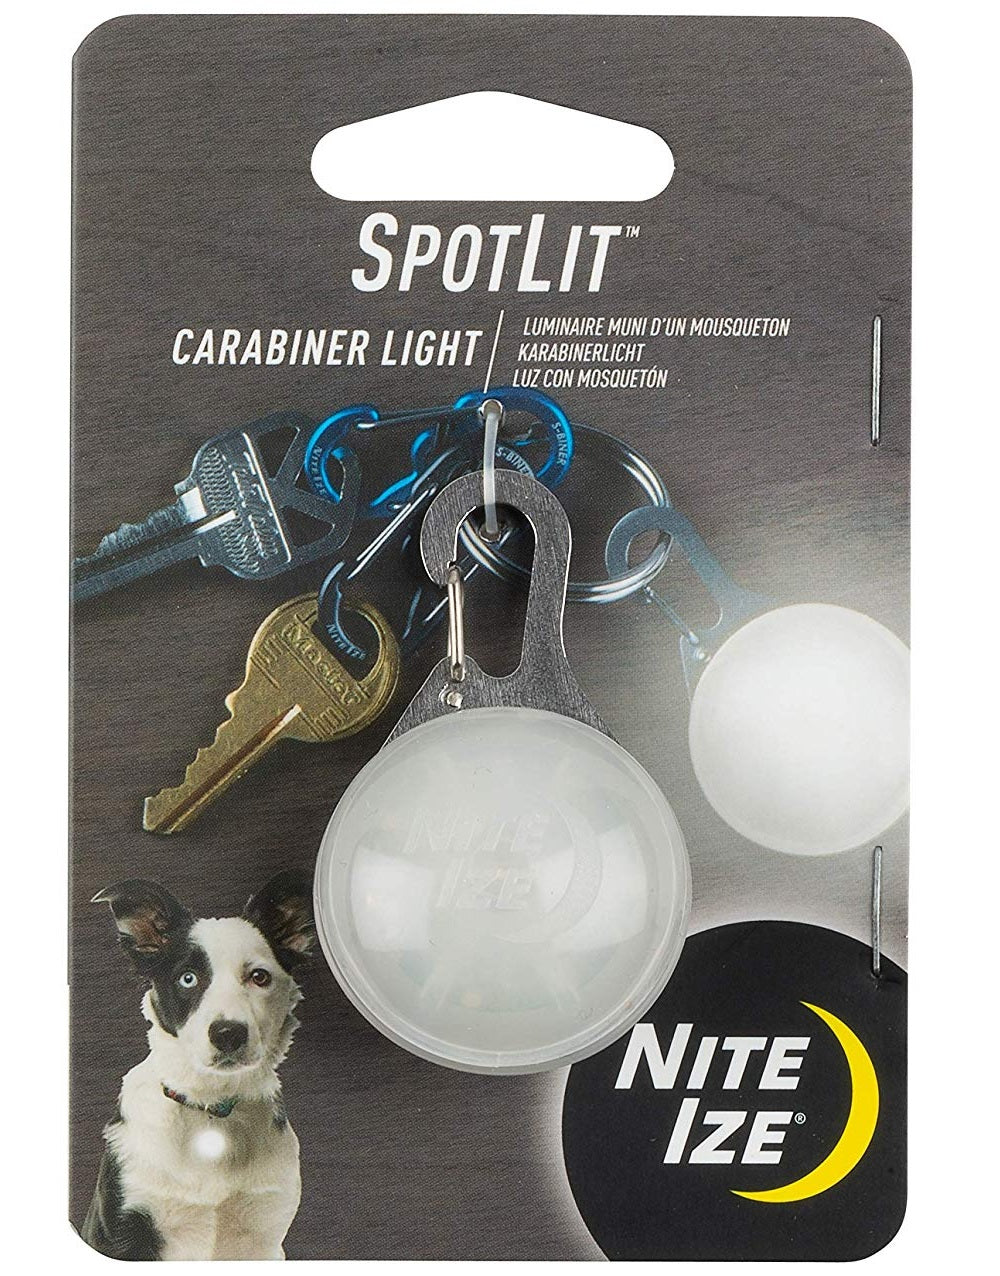 Nite Ize SLG-02-R6 SpotLit LED Carabiner Light